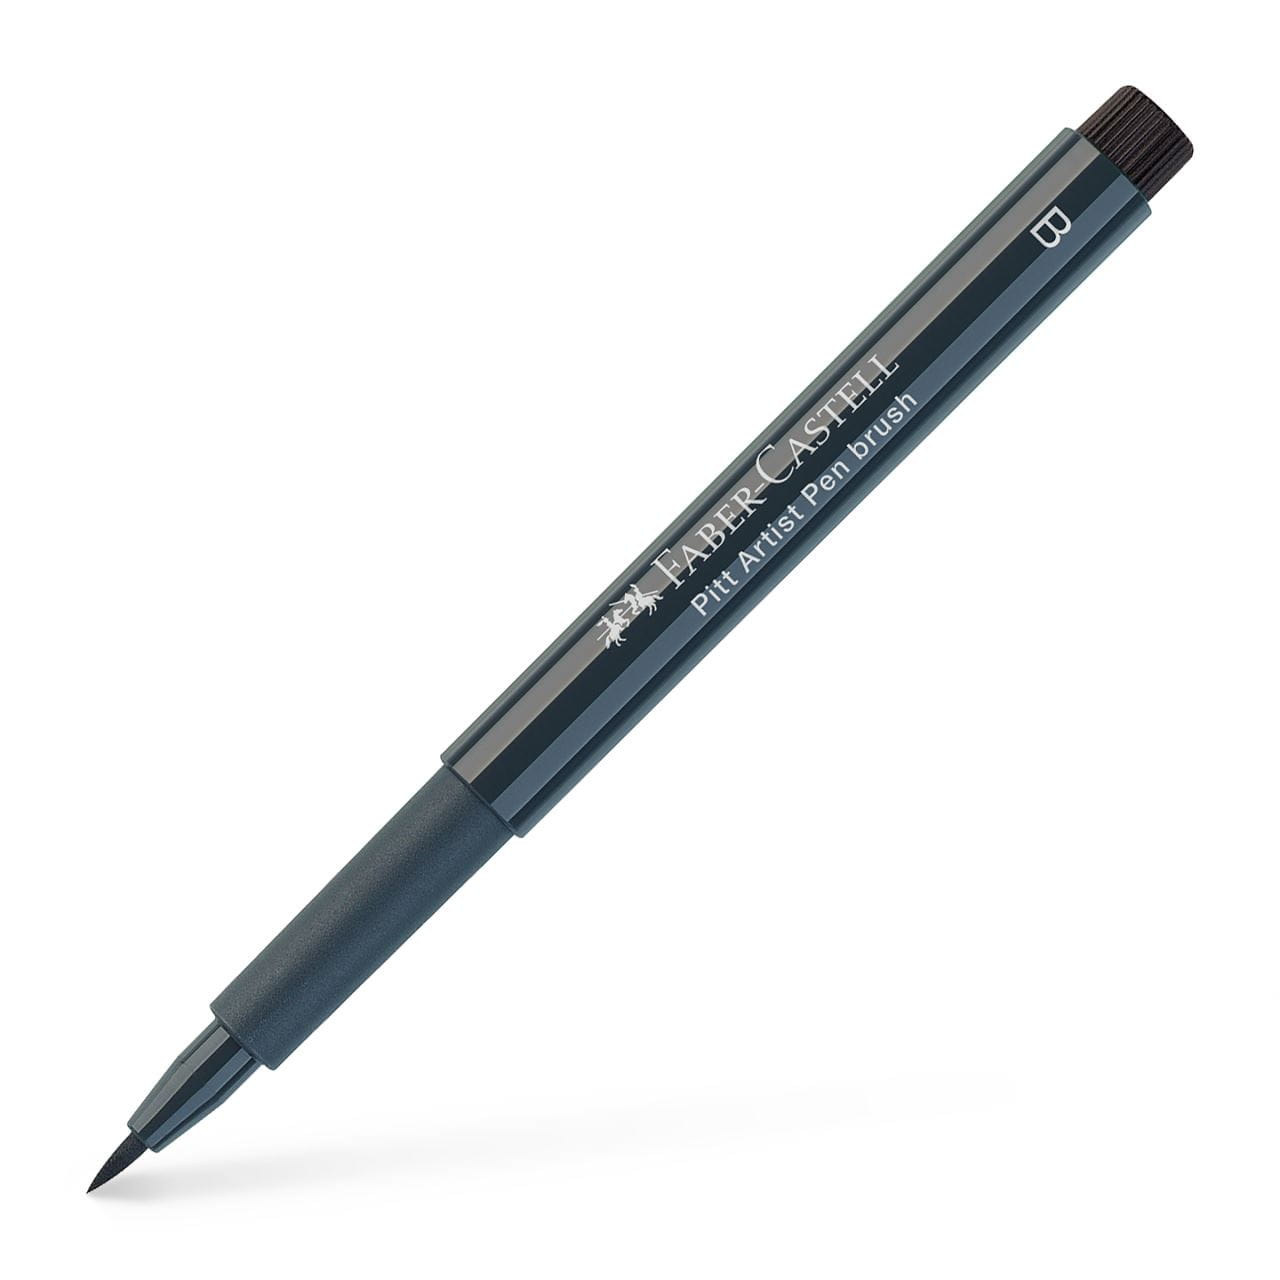 Faber-Castell - PITTアーティストペン　コールドグレーⅥ 235 B